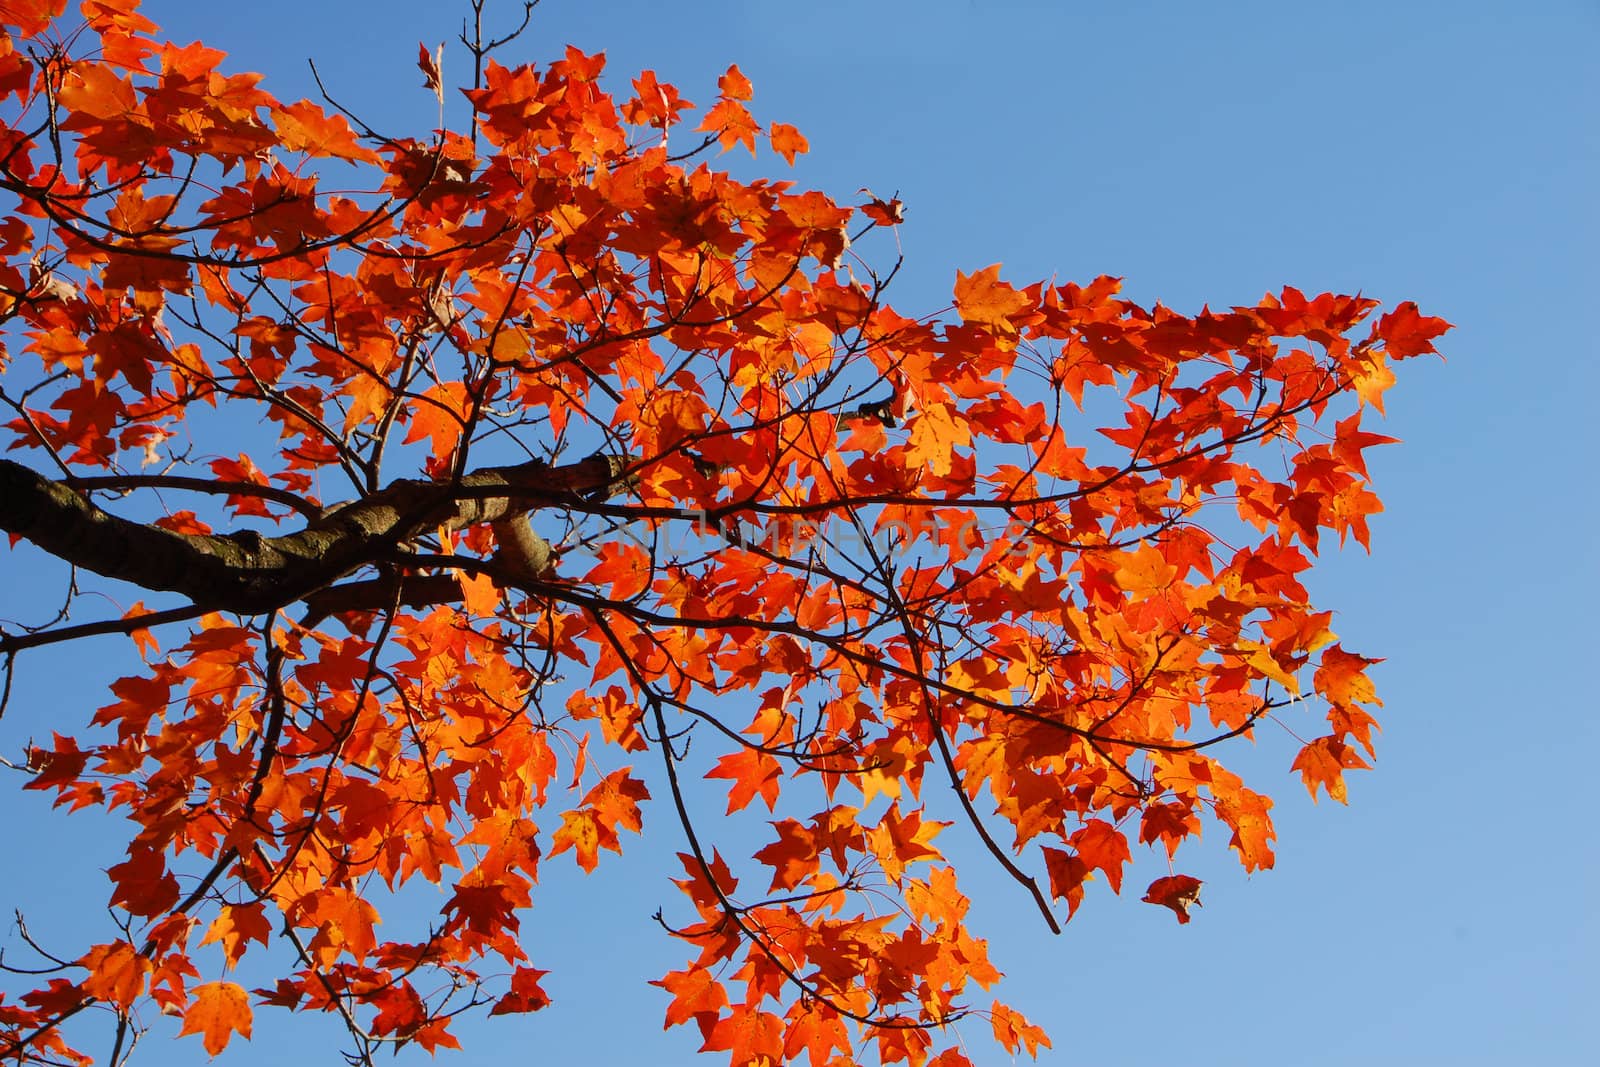 Orange Fall Foliage colors of Maple tree in Autumn